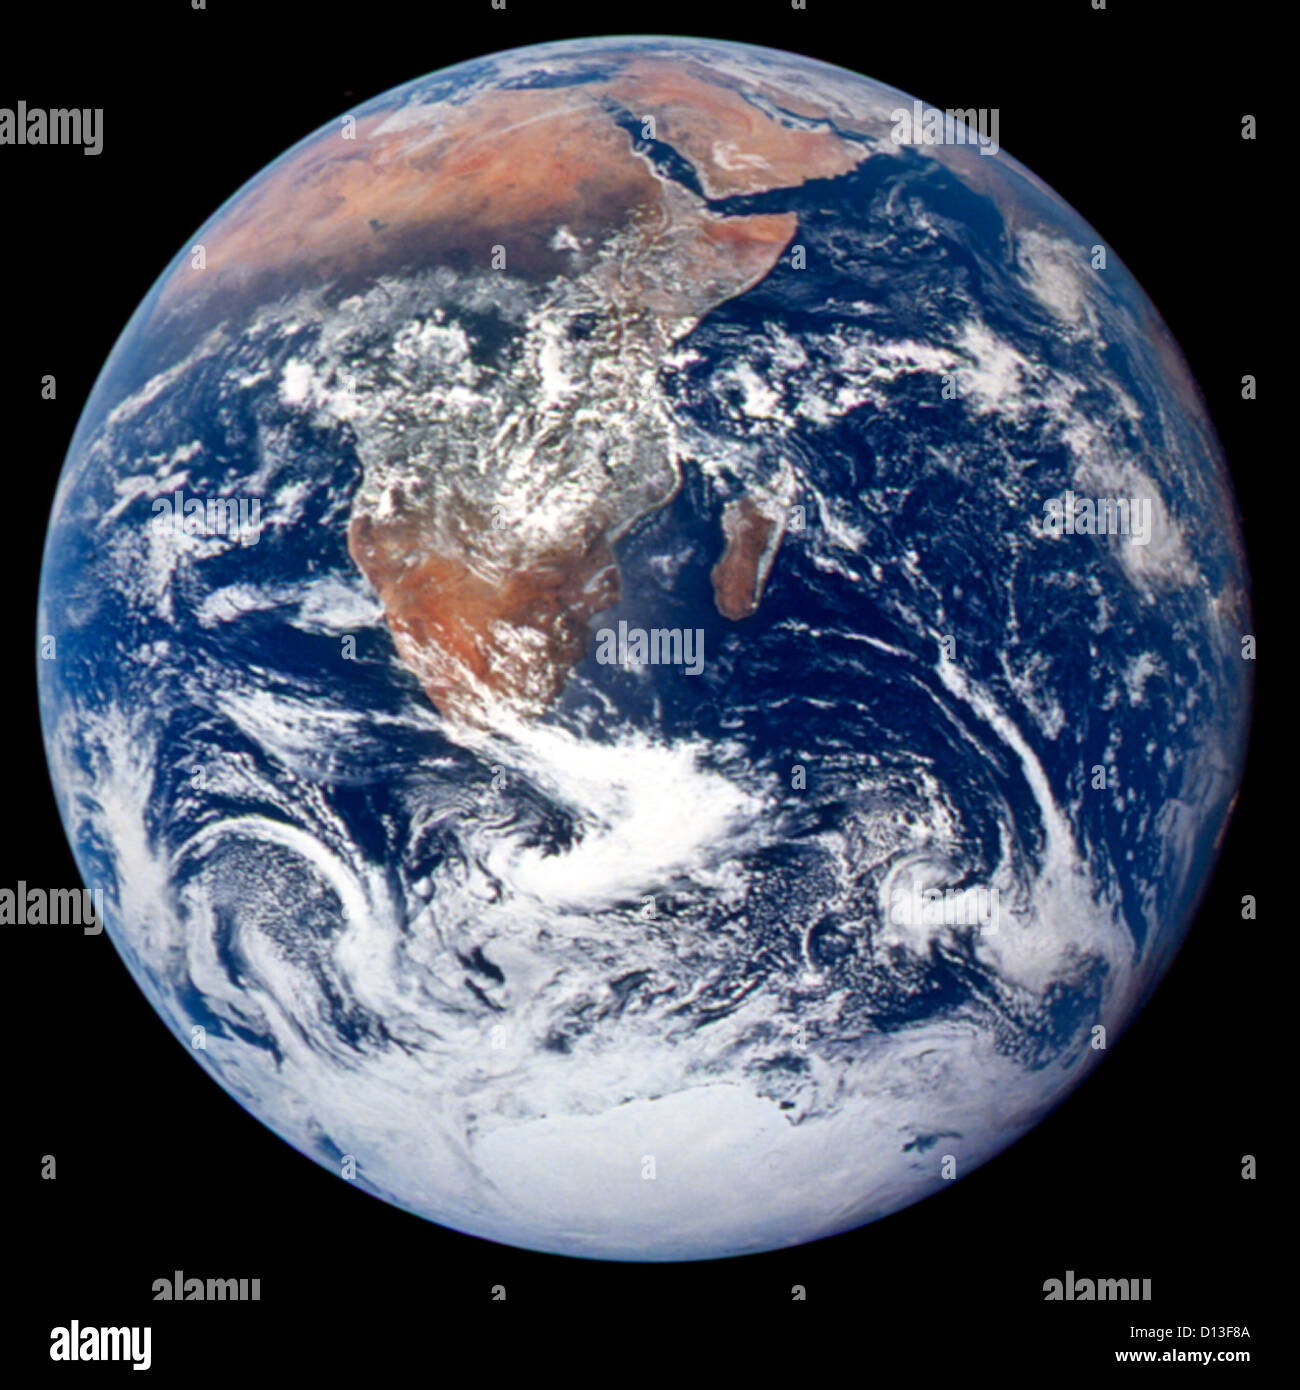 Fotografia classica della Terra come si vede dallo spazio di l'Apollo 17 equipaggio in viaggio verso la luna il 7 dicembre 1972. Questa costa translunar fotografia si estende dalla zona del Mare Mediterraneo per l'Antartide a sud il ghiaccio polare cap. Questa è la prima volta che la traiettoria di Apollo ha reso possibile la fotografia del sud il ghiaccio polare cap. Nota la pesante copertura nuvolosa nell'emisfero meridionale. Quasi tutta la costa dell'Africa è chiaramente visibile. La Penisola Arabica può essere visto a bordo del nordest dell'Africa. La grande isola al largo della costa africana è la Repubblica malgascia. L'Asian mainlan Foto Stock